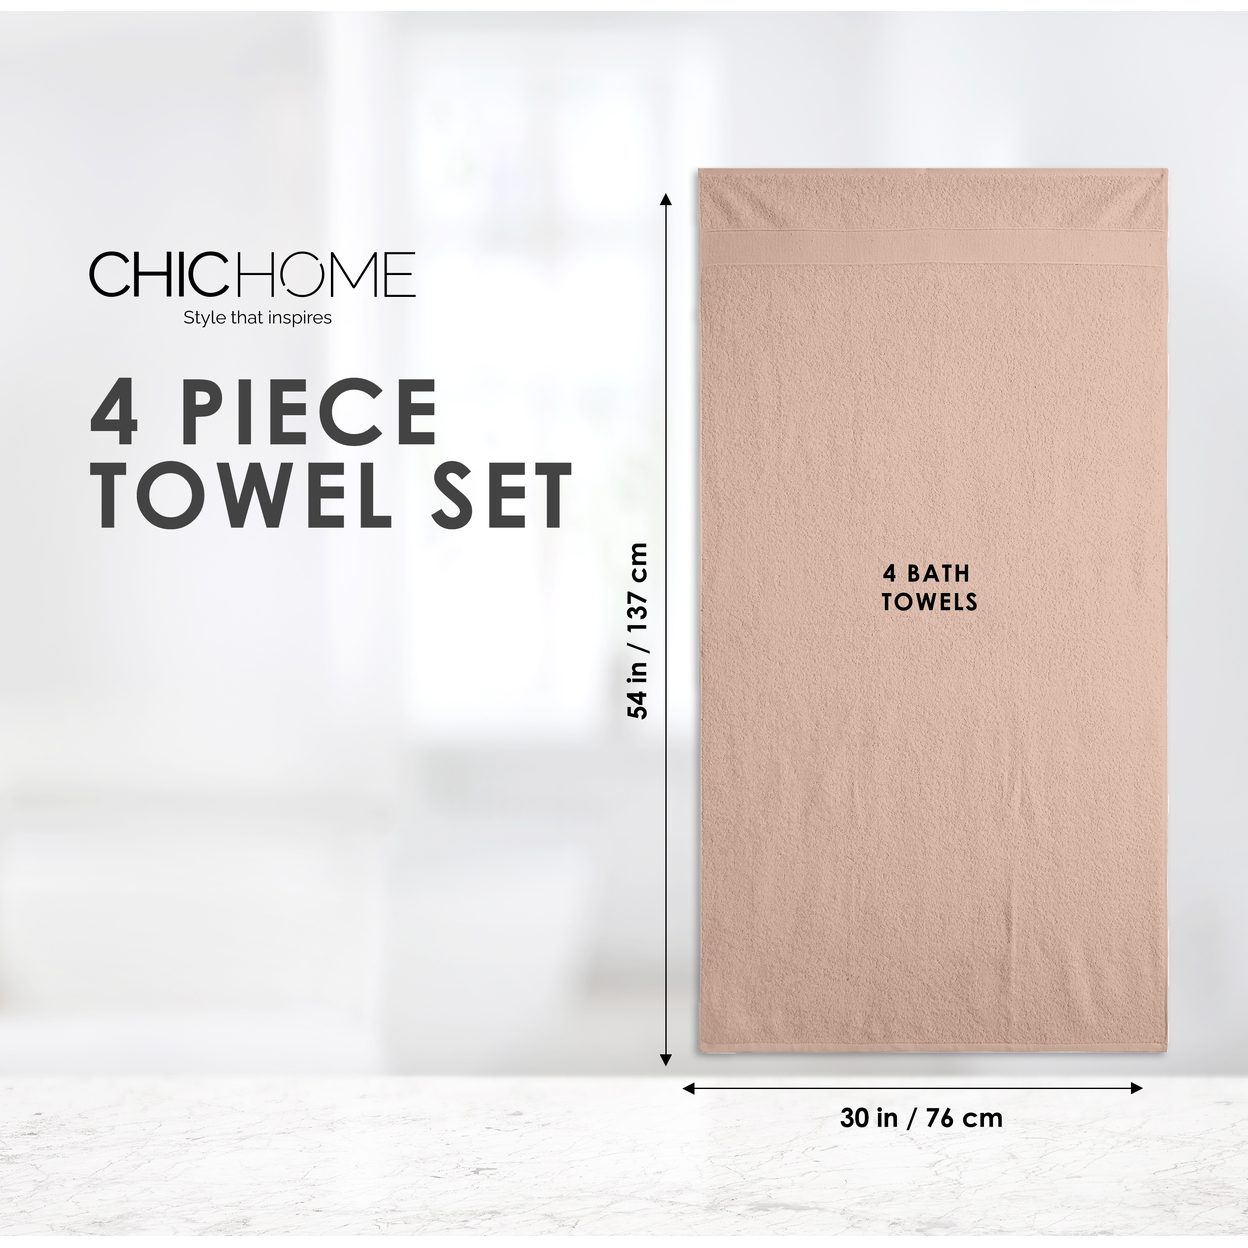 Chic Home Luxurious 4-Piece 100% Pure Turkish Cotton Bath Towels, 30 X 54, Dobby Border Design, OEKO-TEX Certified Set - Beige